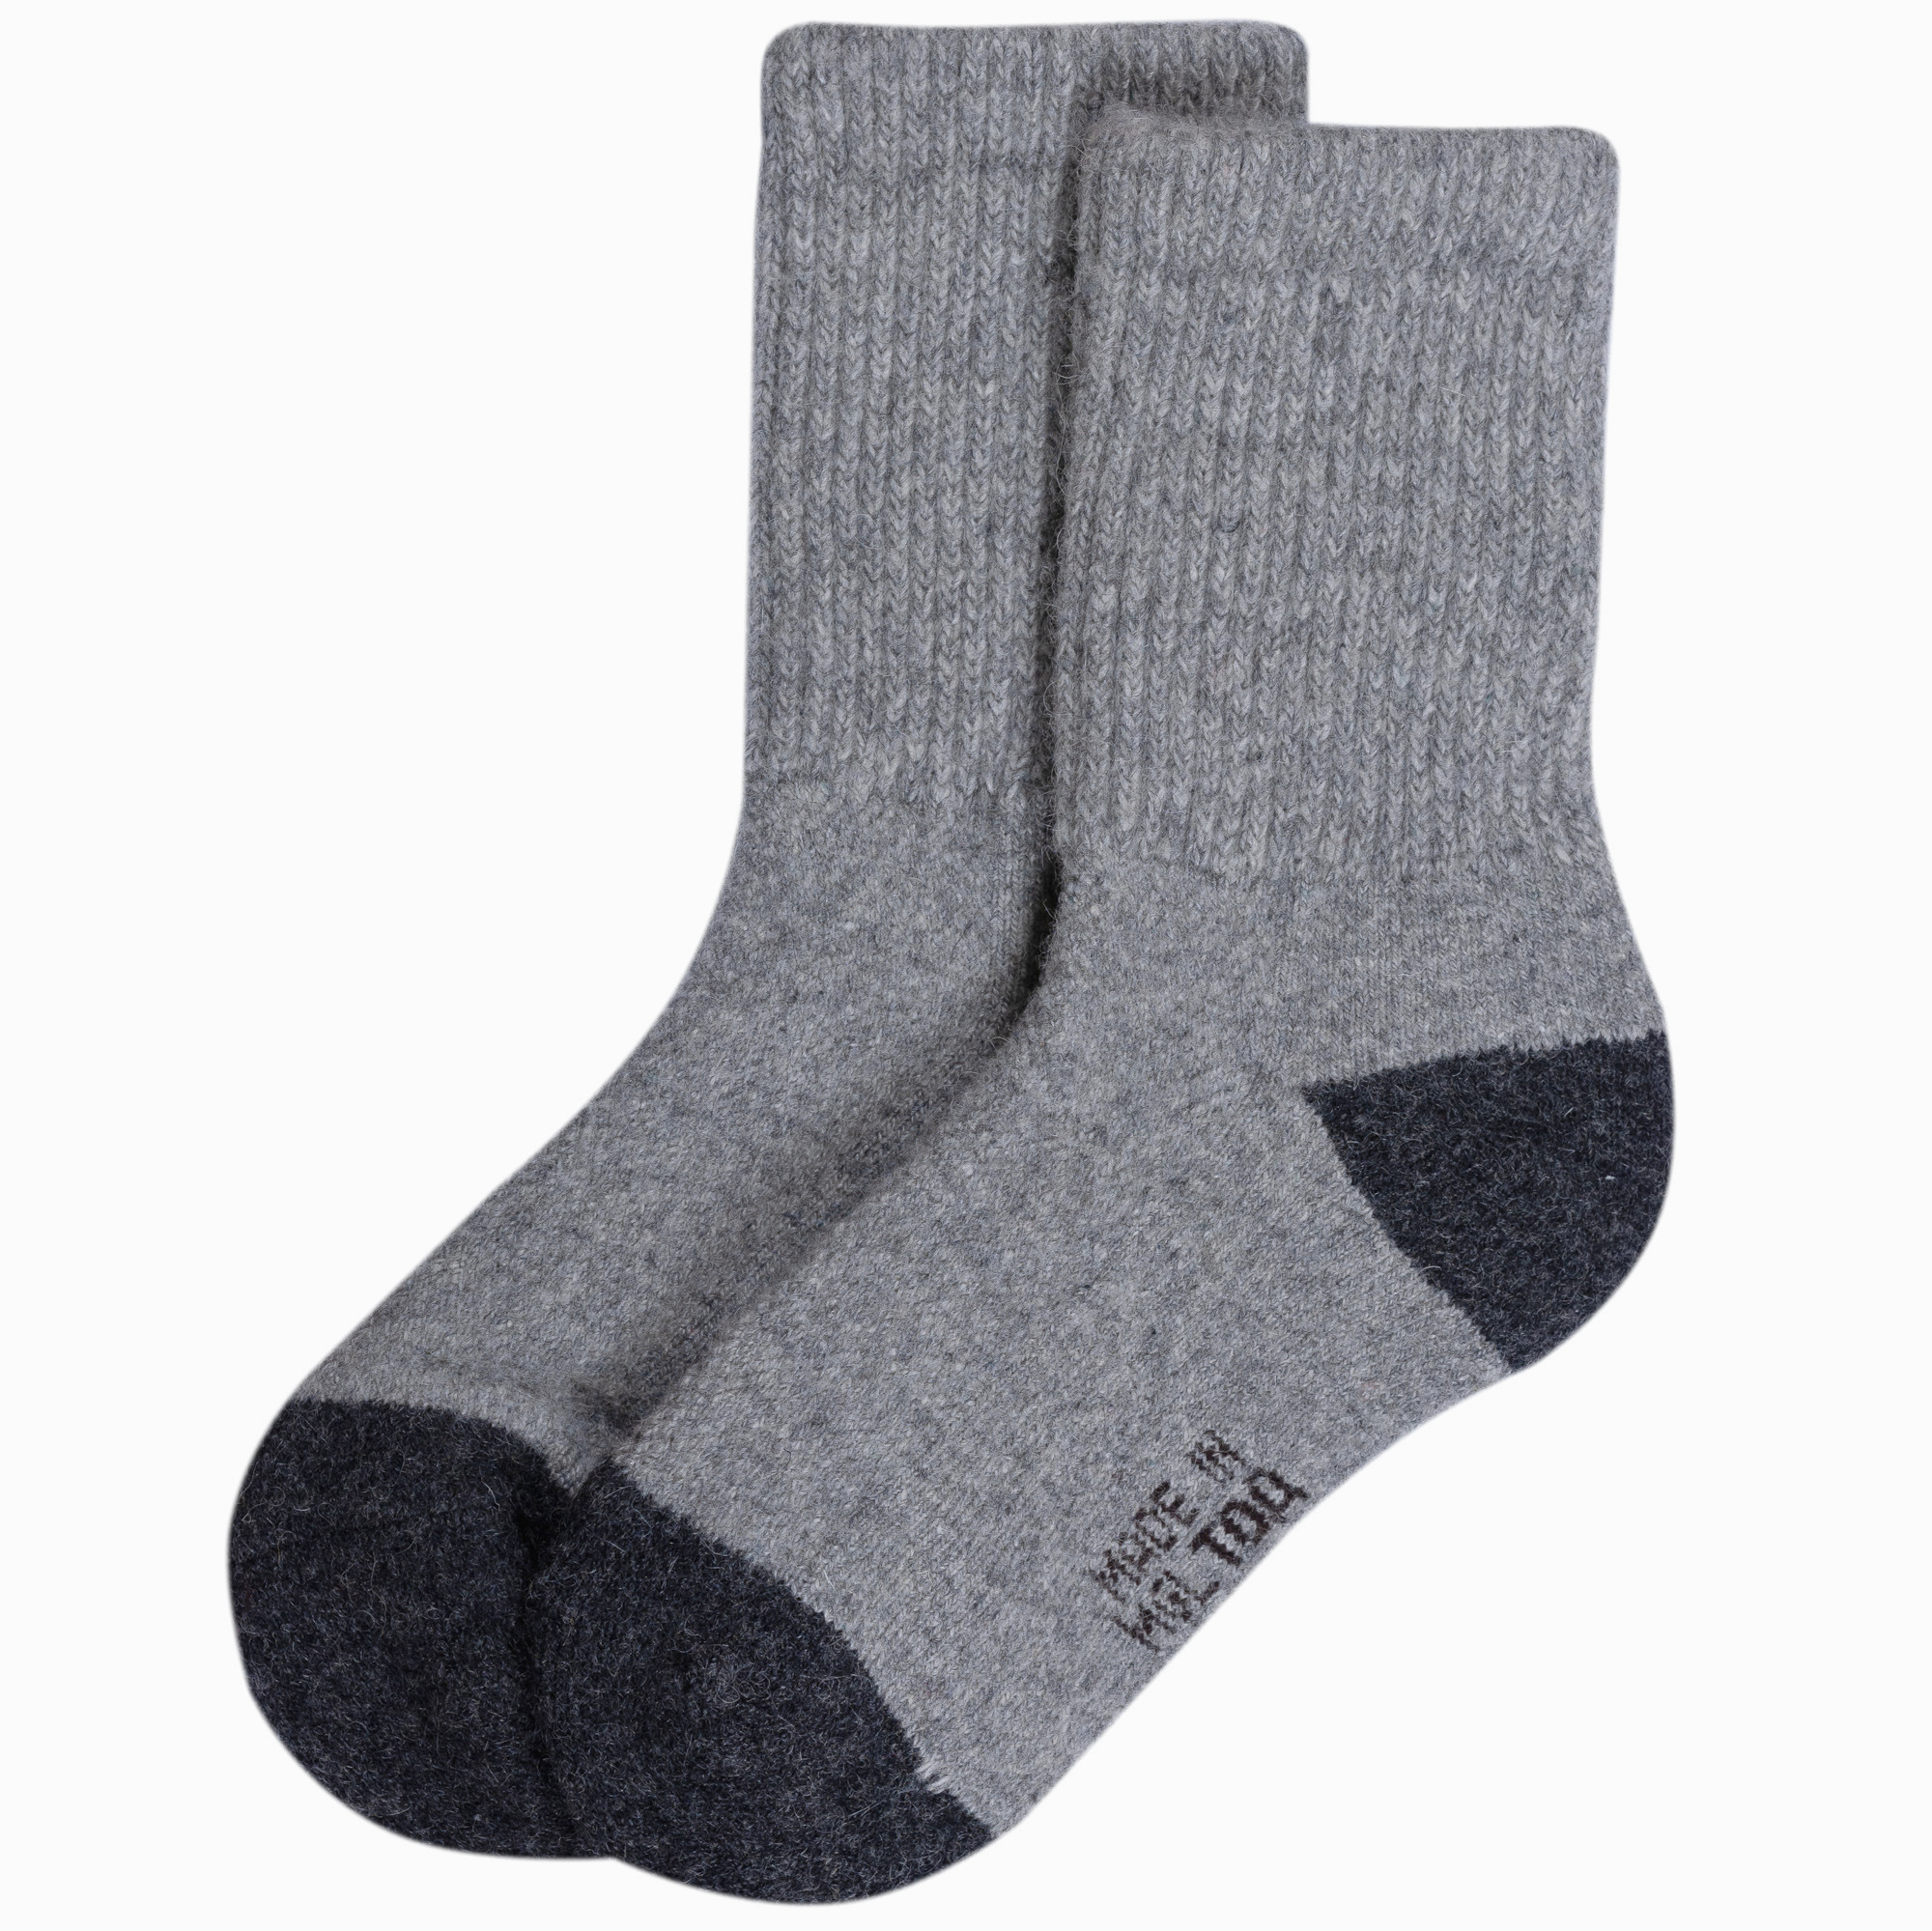 Детские носки из монгольской шерсти B210:B233 02103_12-14_серо-черные